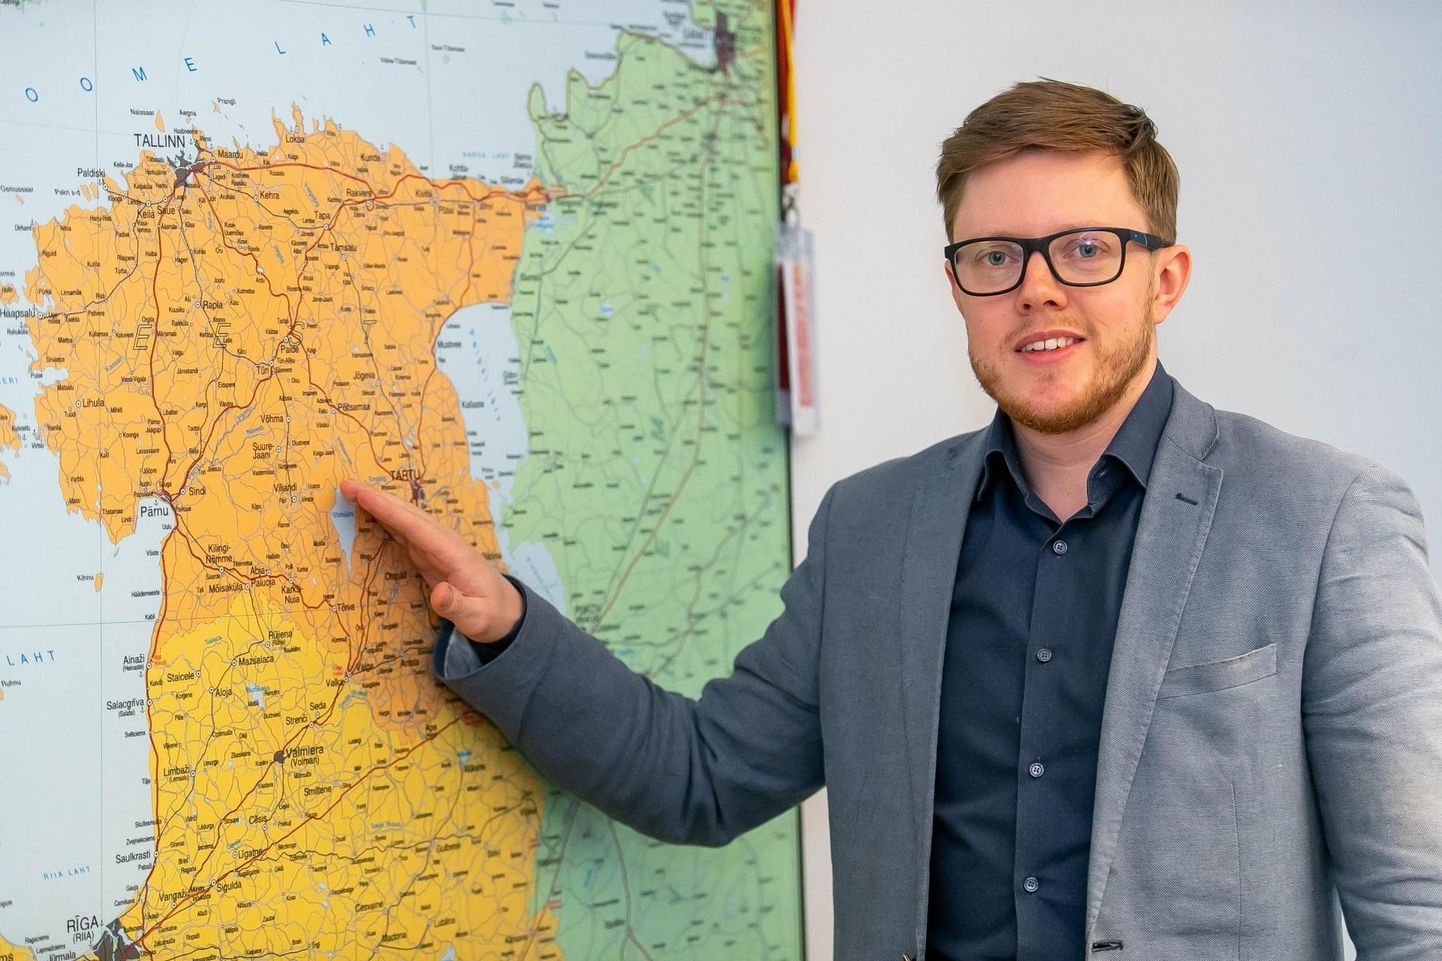 PricewaterhouseCoopers Eesti juhtivkonsultant Tarmo Meresmaa soovitab võtta suunaks ülemineku tegevuspõhisele eelarvele, mille puhul seatakse paika eesmärgid, mõõdikuid ja rahastamise kava.